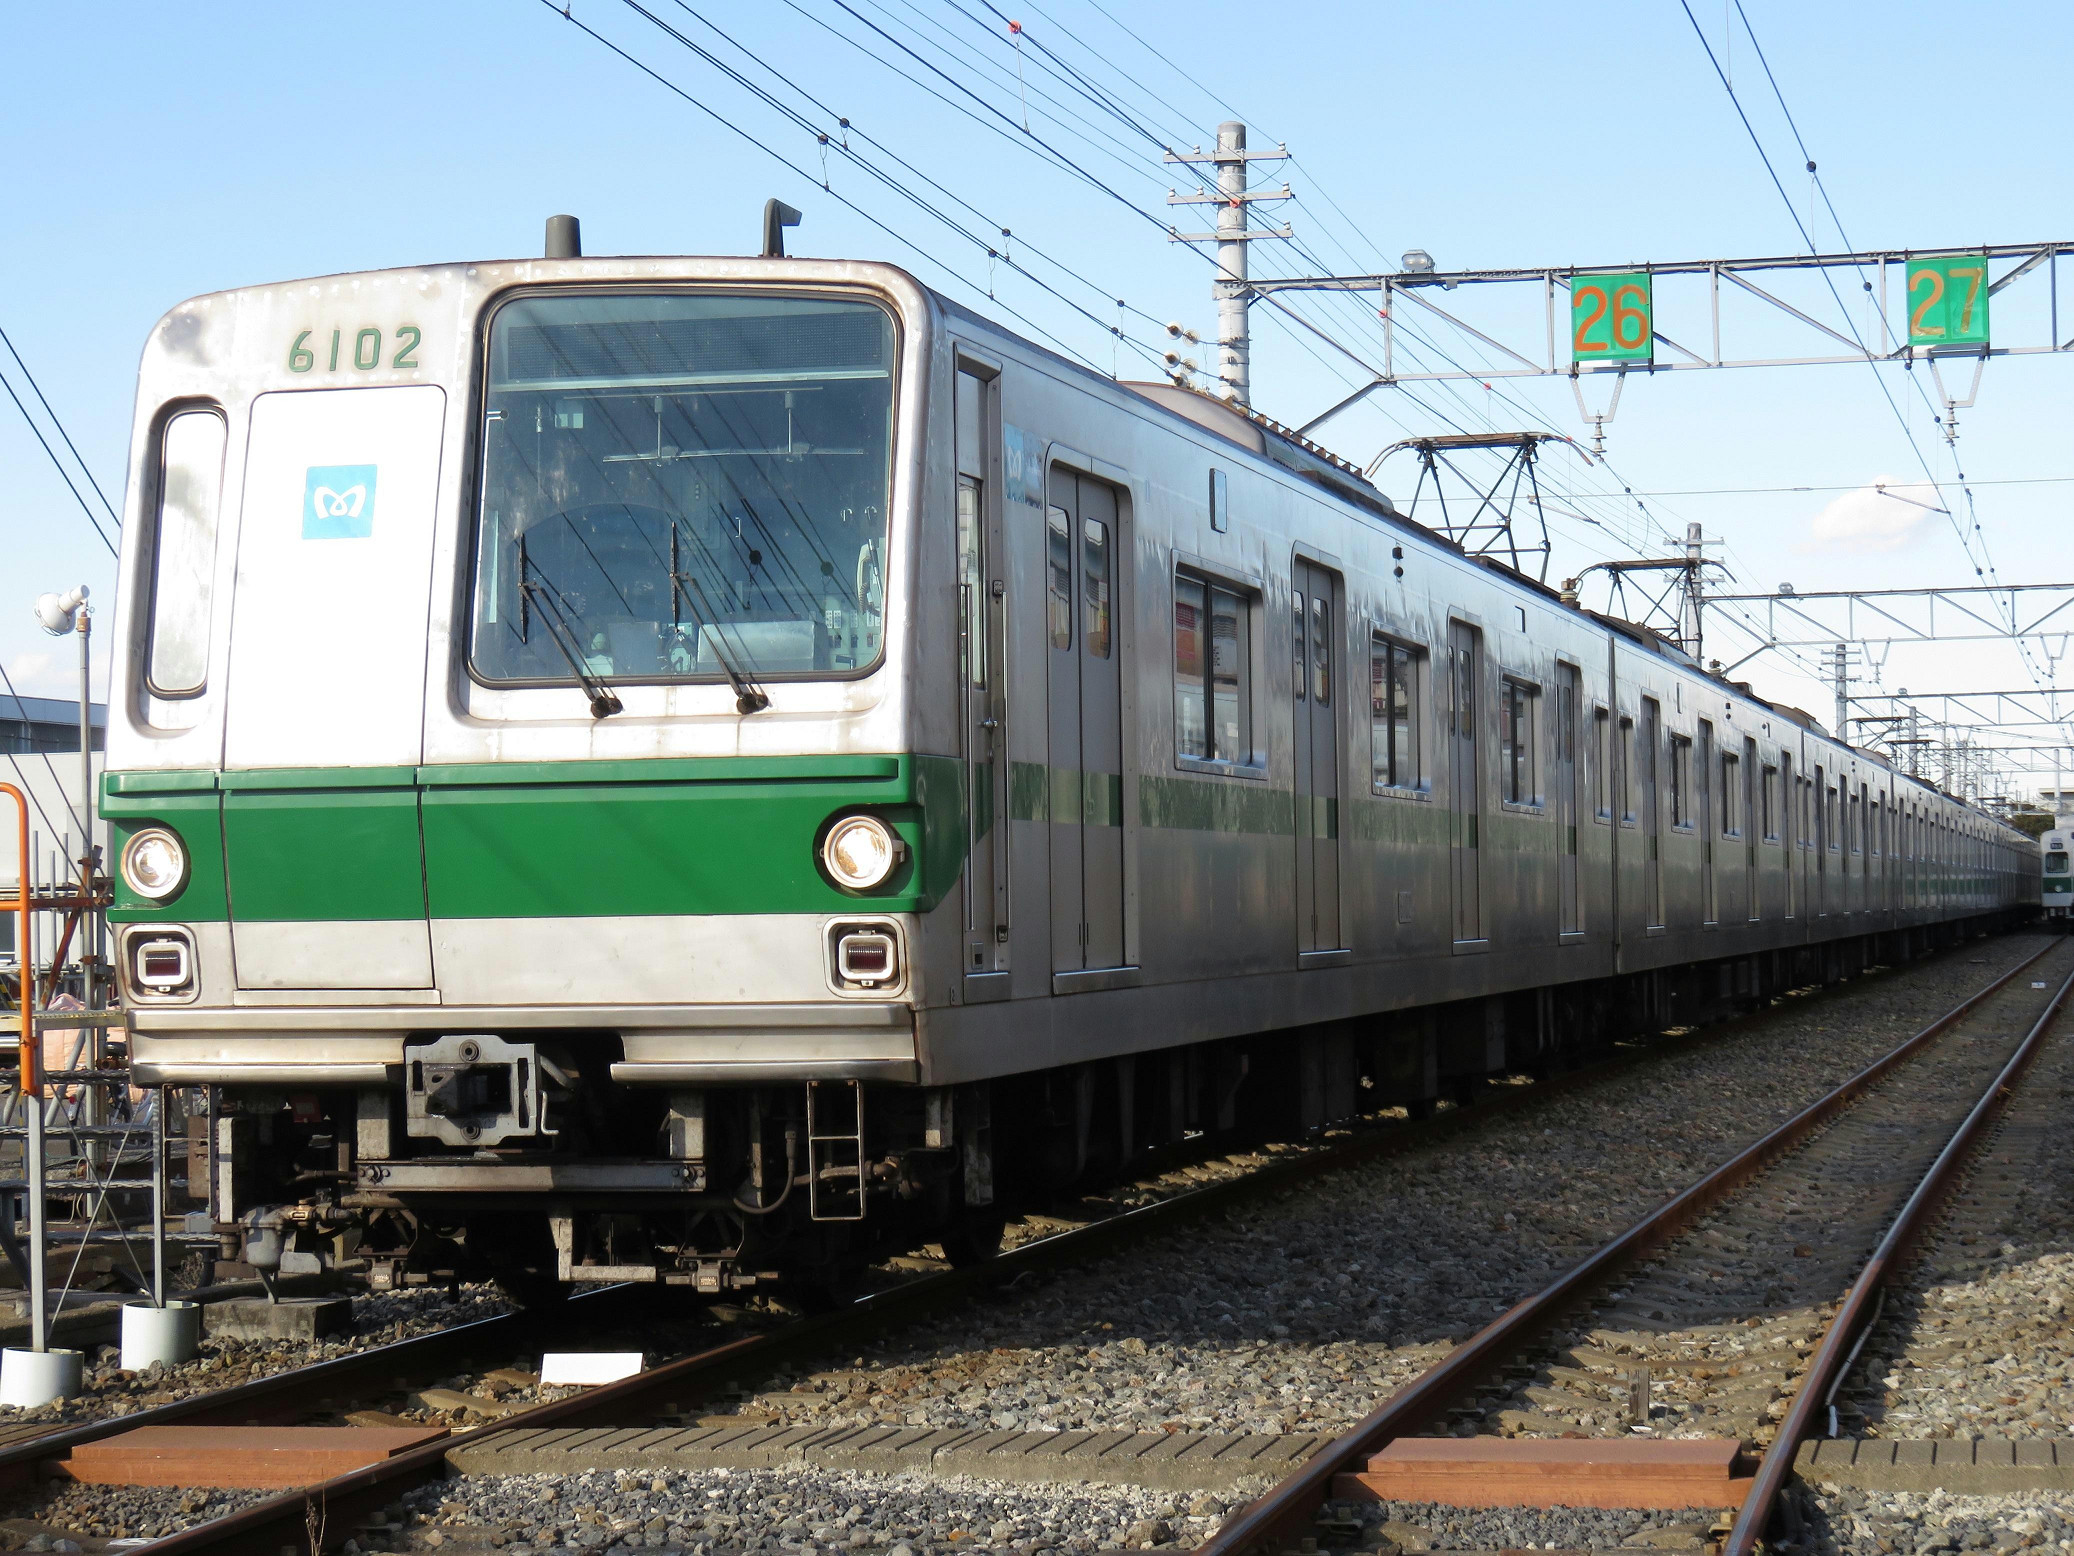 千代田線6000系